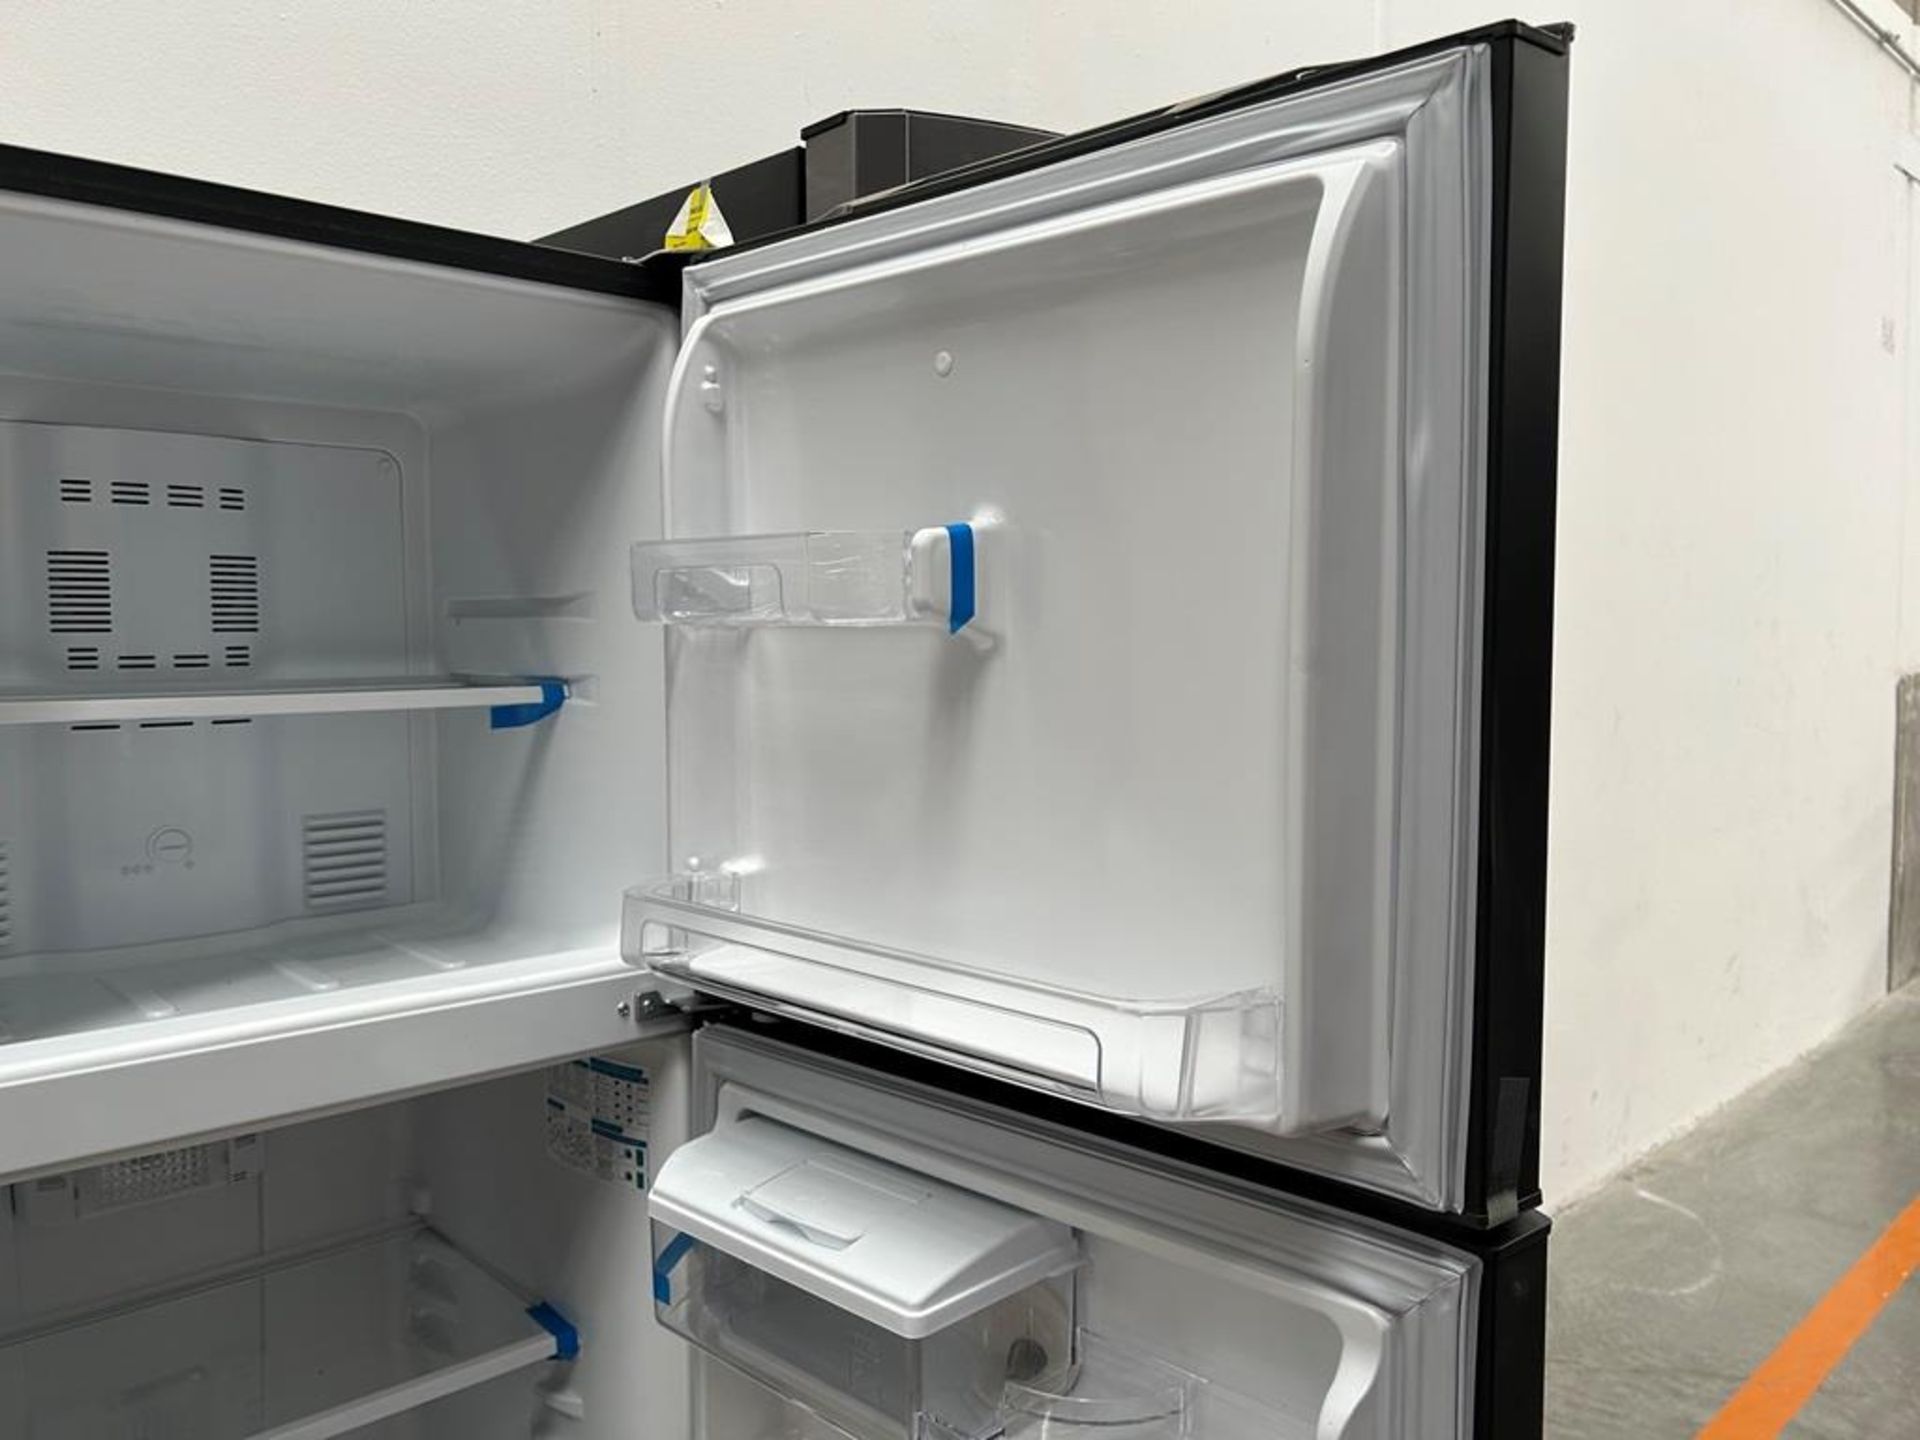 Lote de 2 refrigeradores contiene:1 refrigerador Marca MABE, Modelo RMS400IVMRMA, Serie 03009, Colo - Image 15 of 18